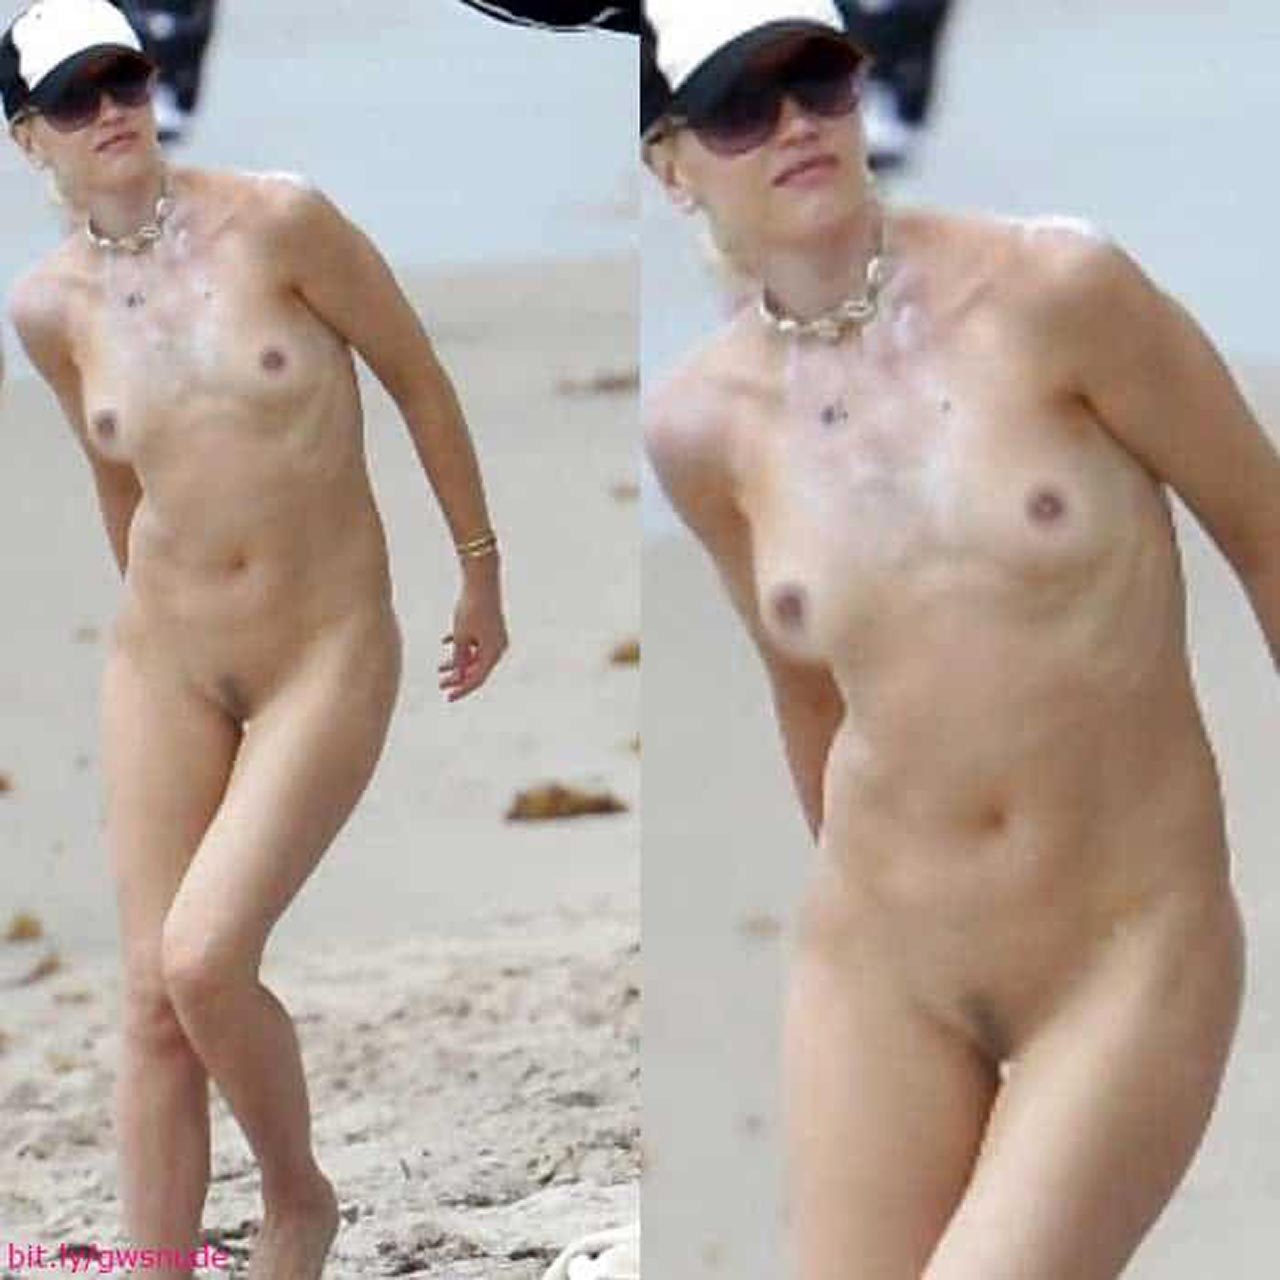 Gwen stefani leaked nude